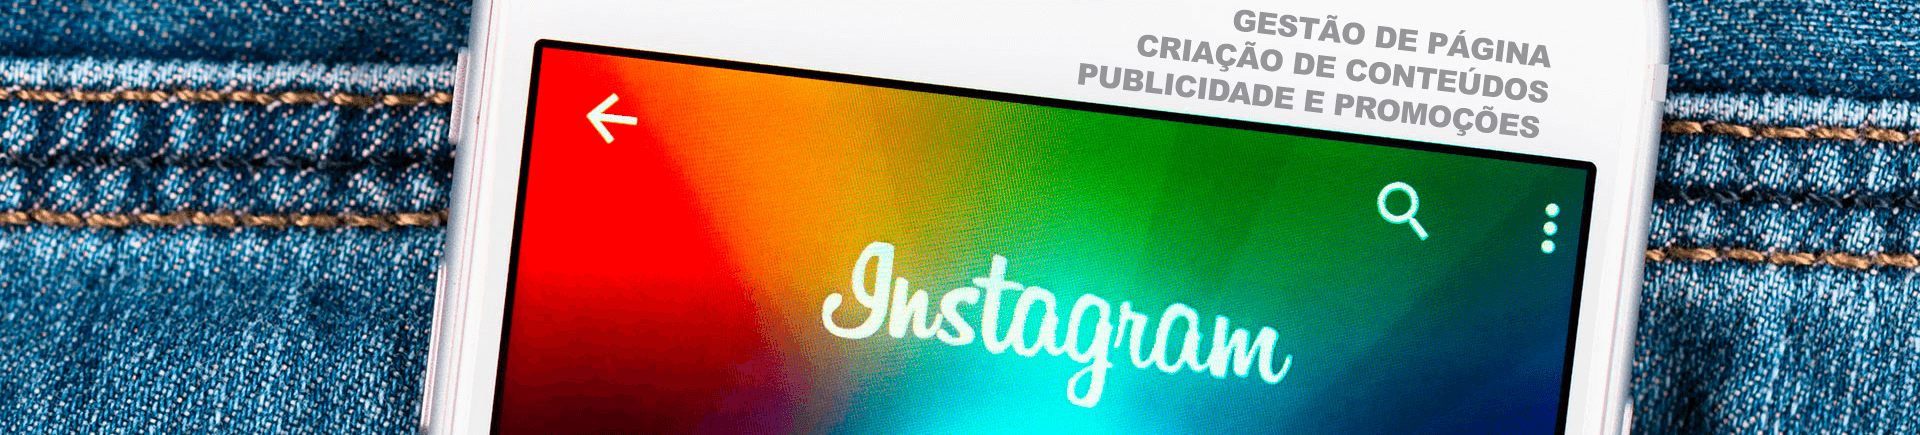 gestão publicidade instagram